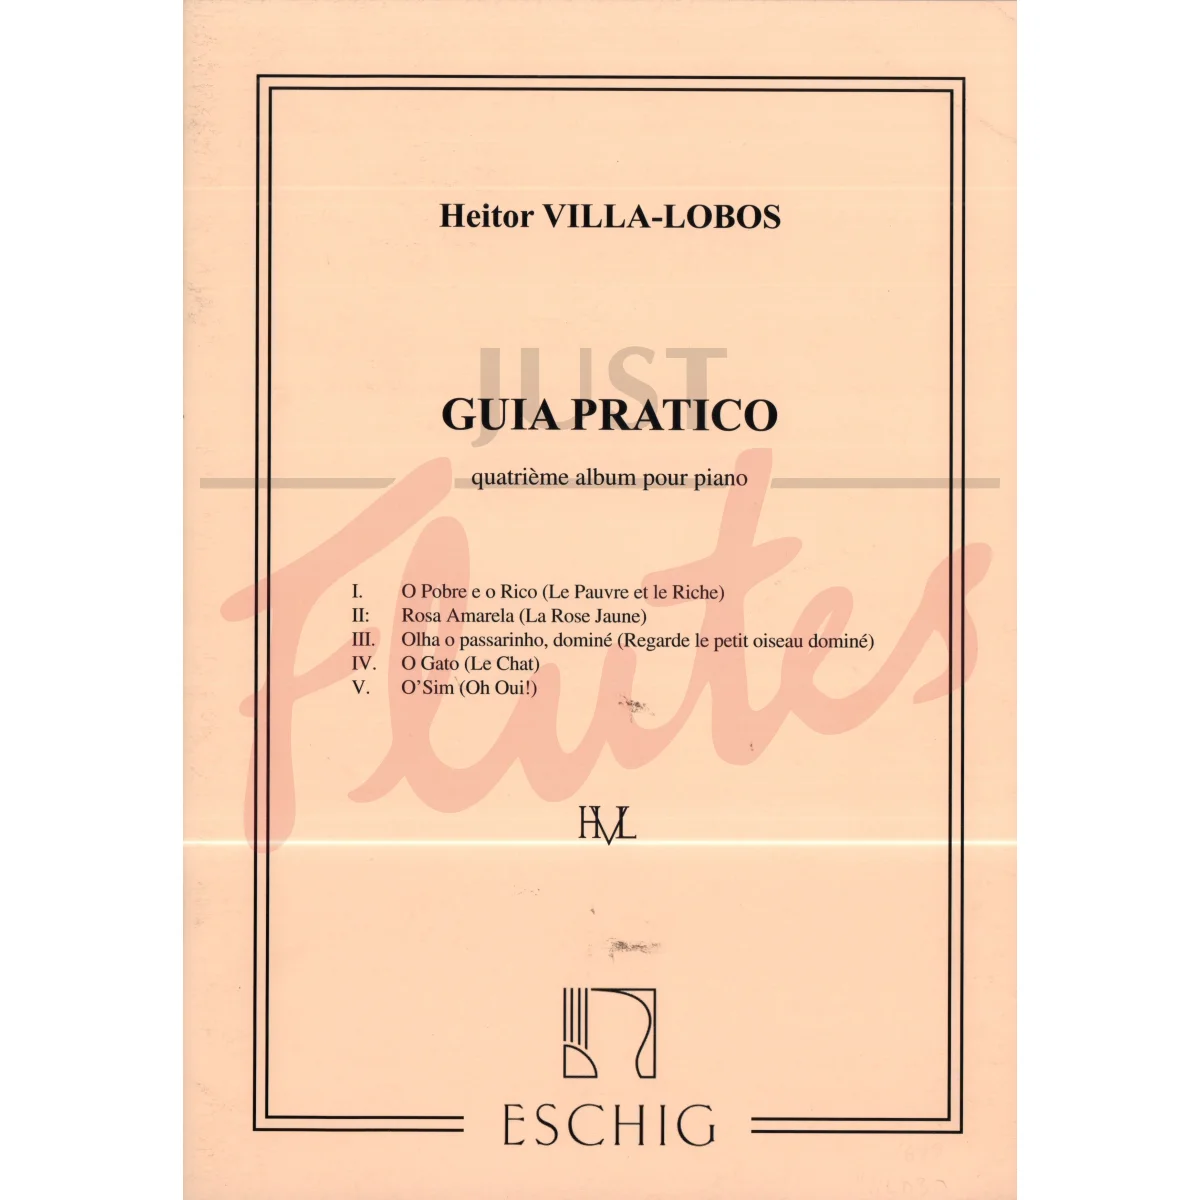 Guia Pratico for Piano